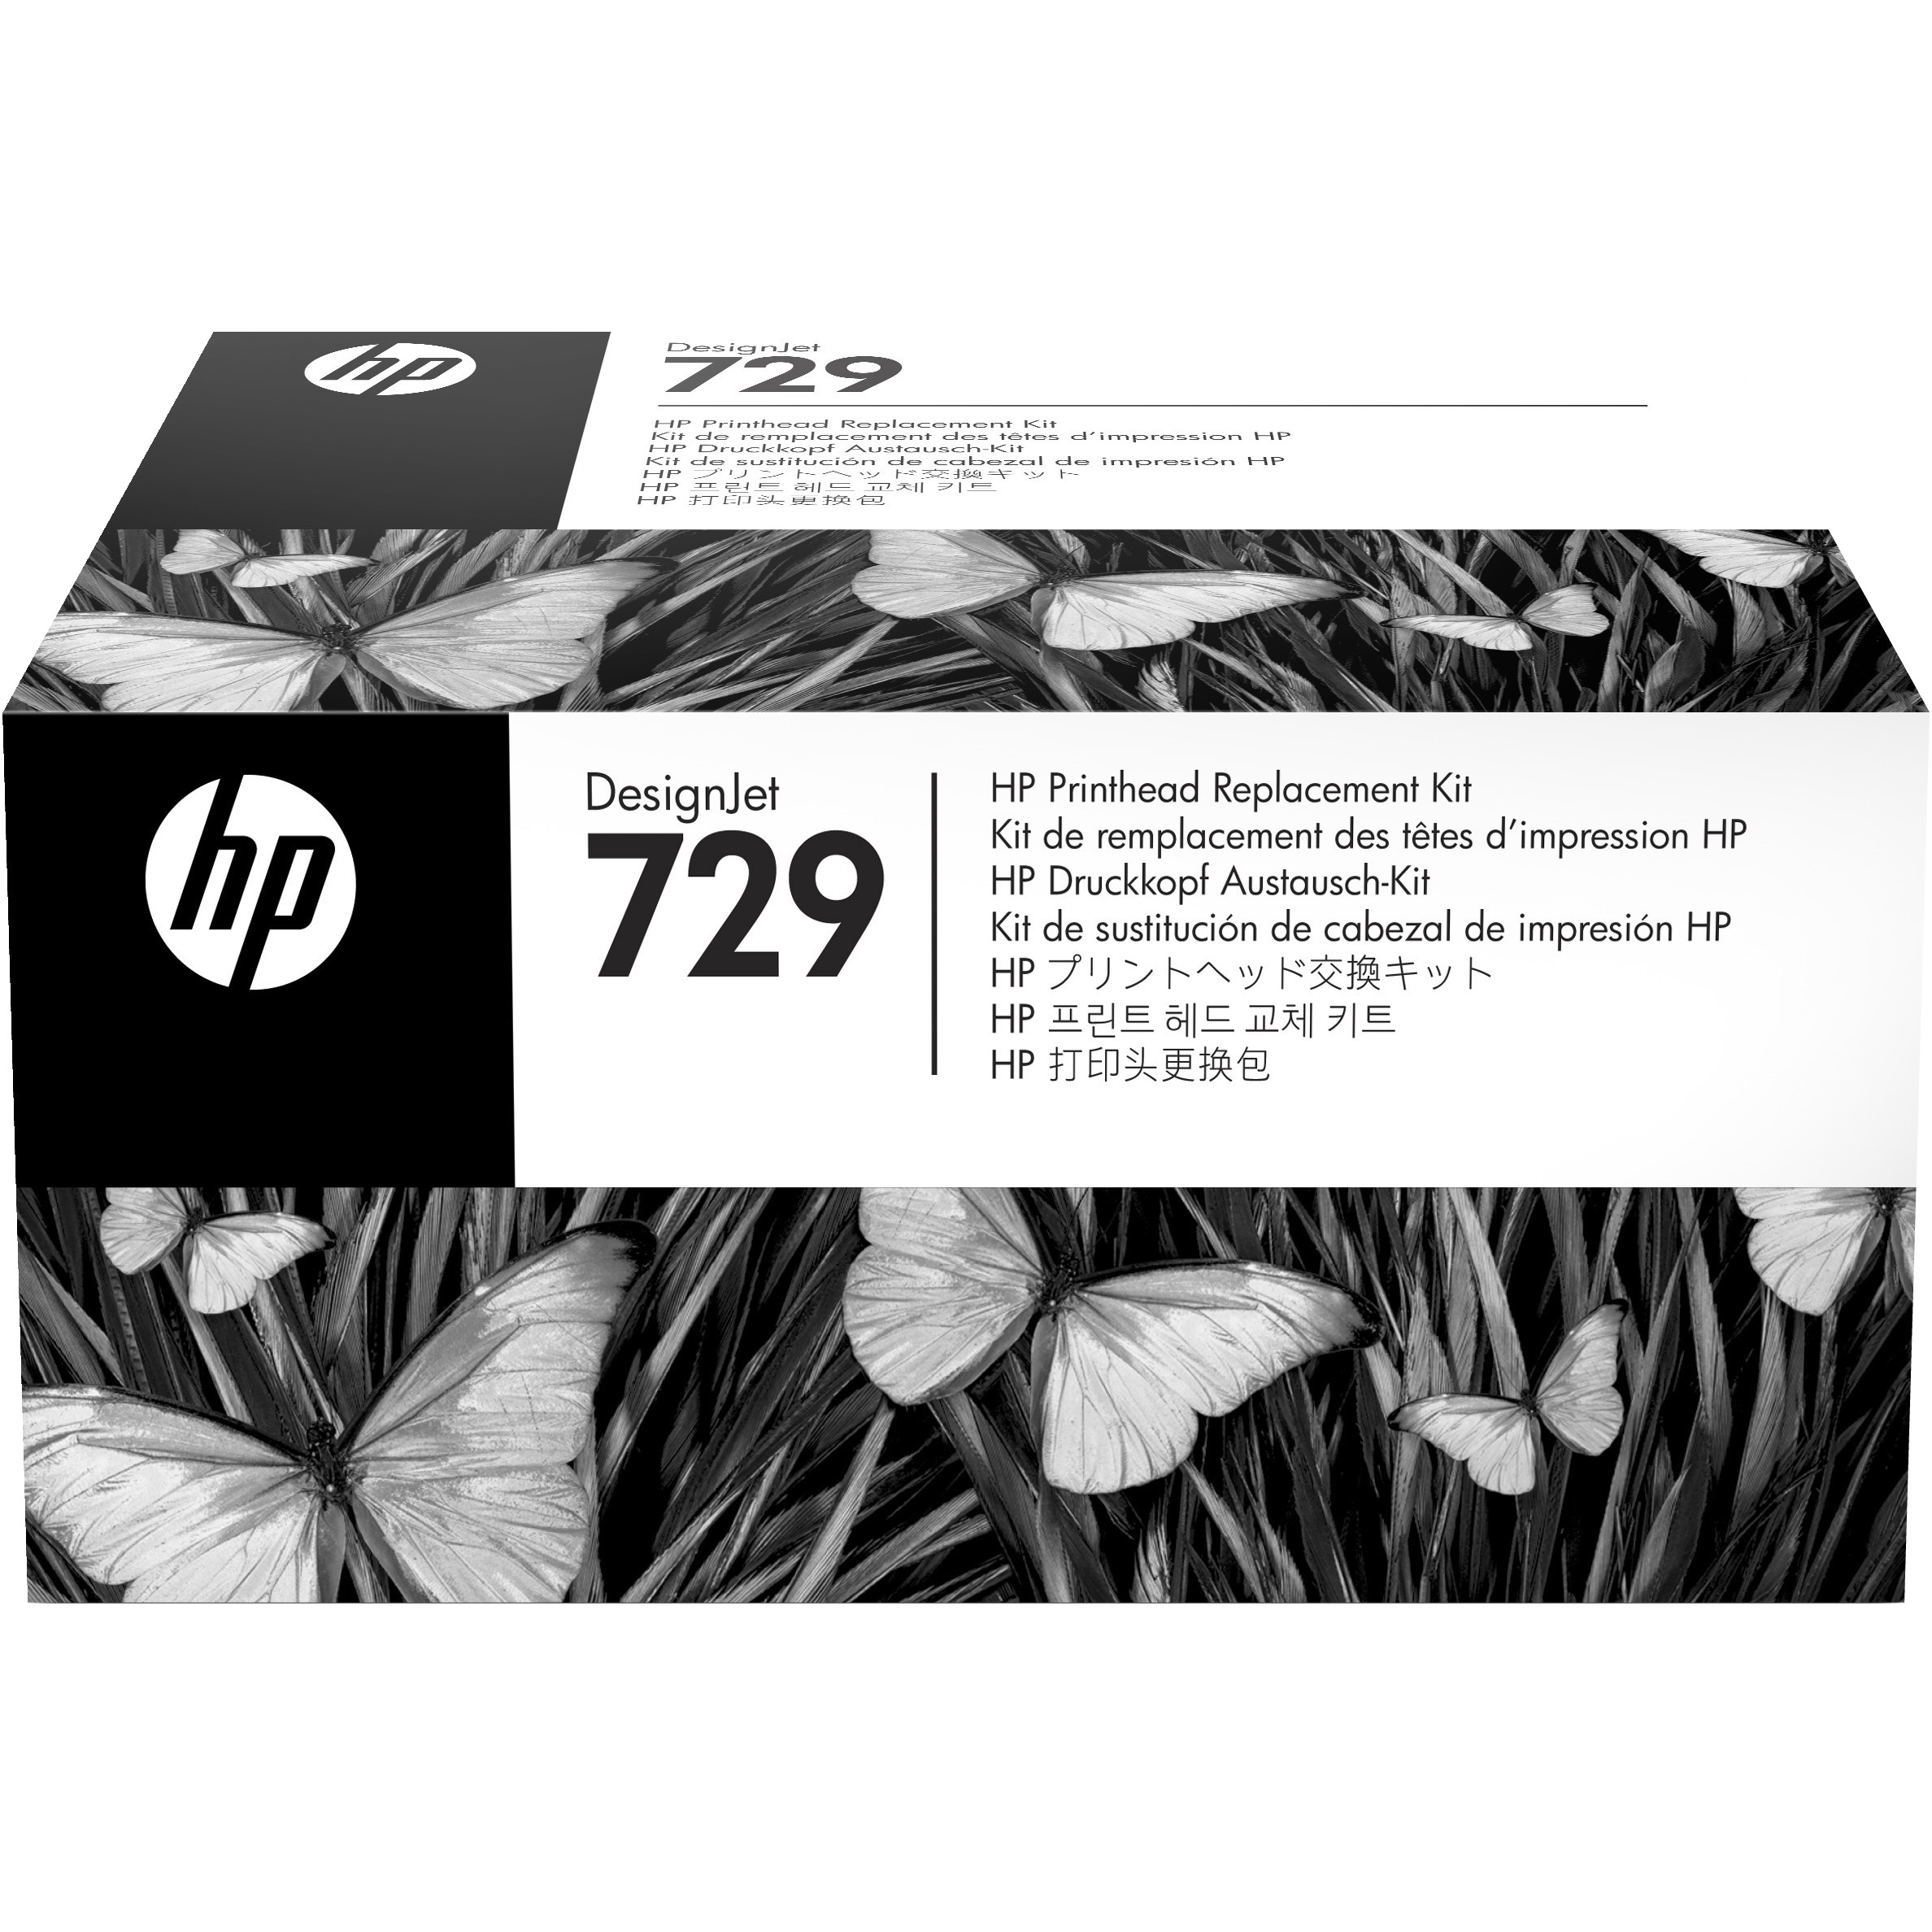 HP 729 DesignJet Druckkopf Austauschset